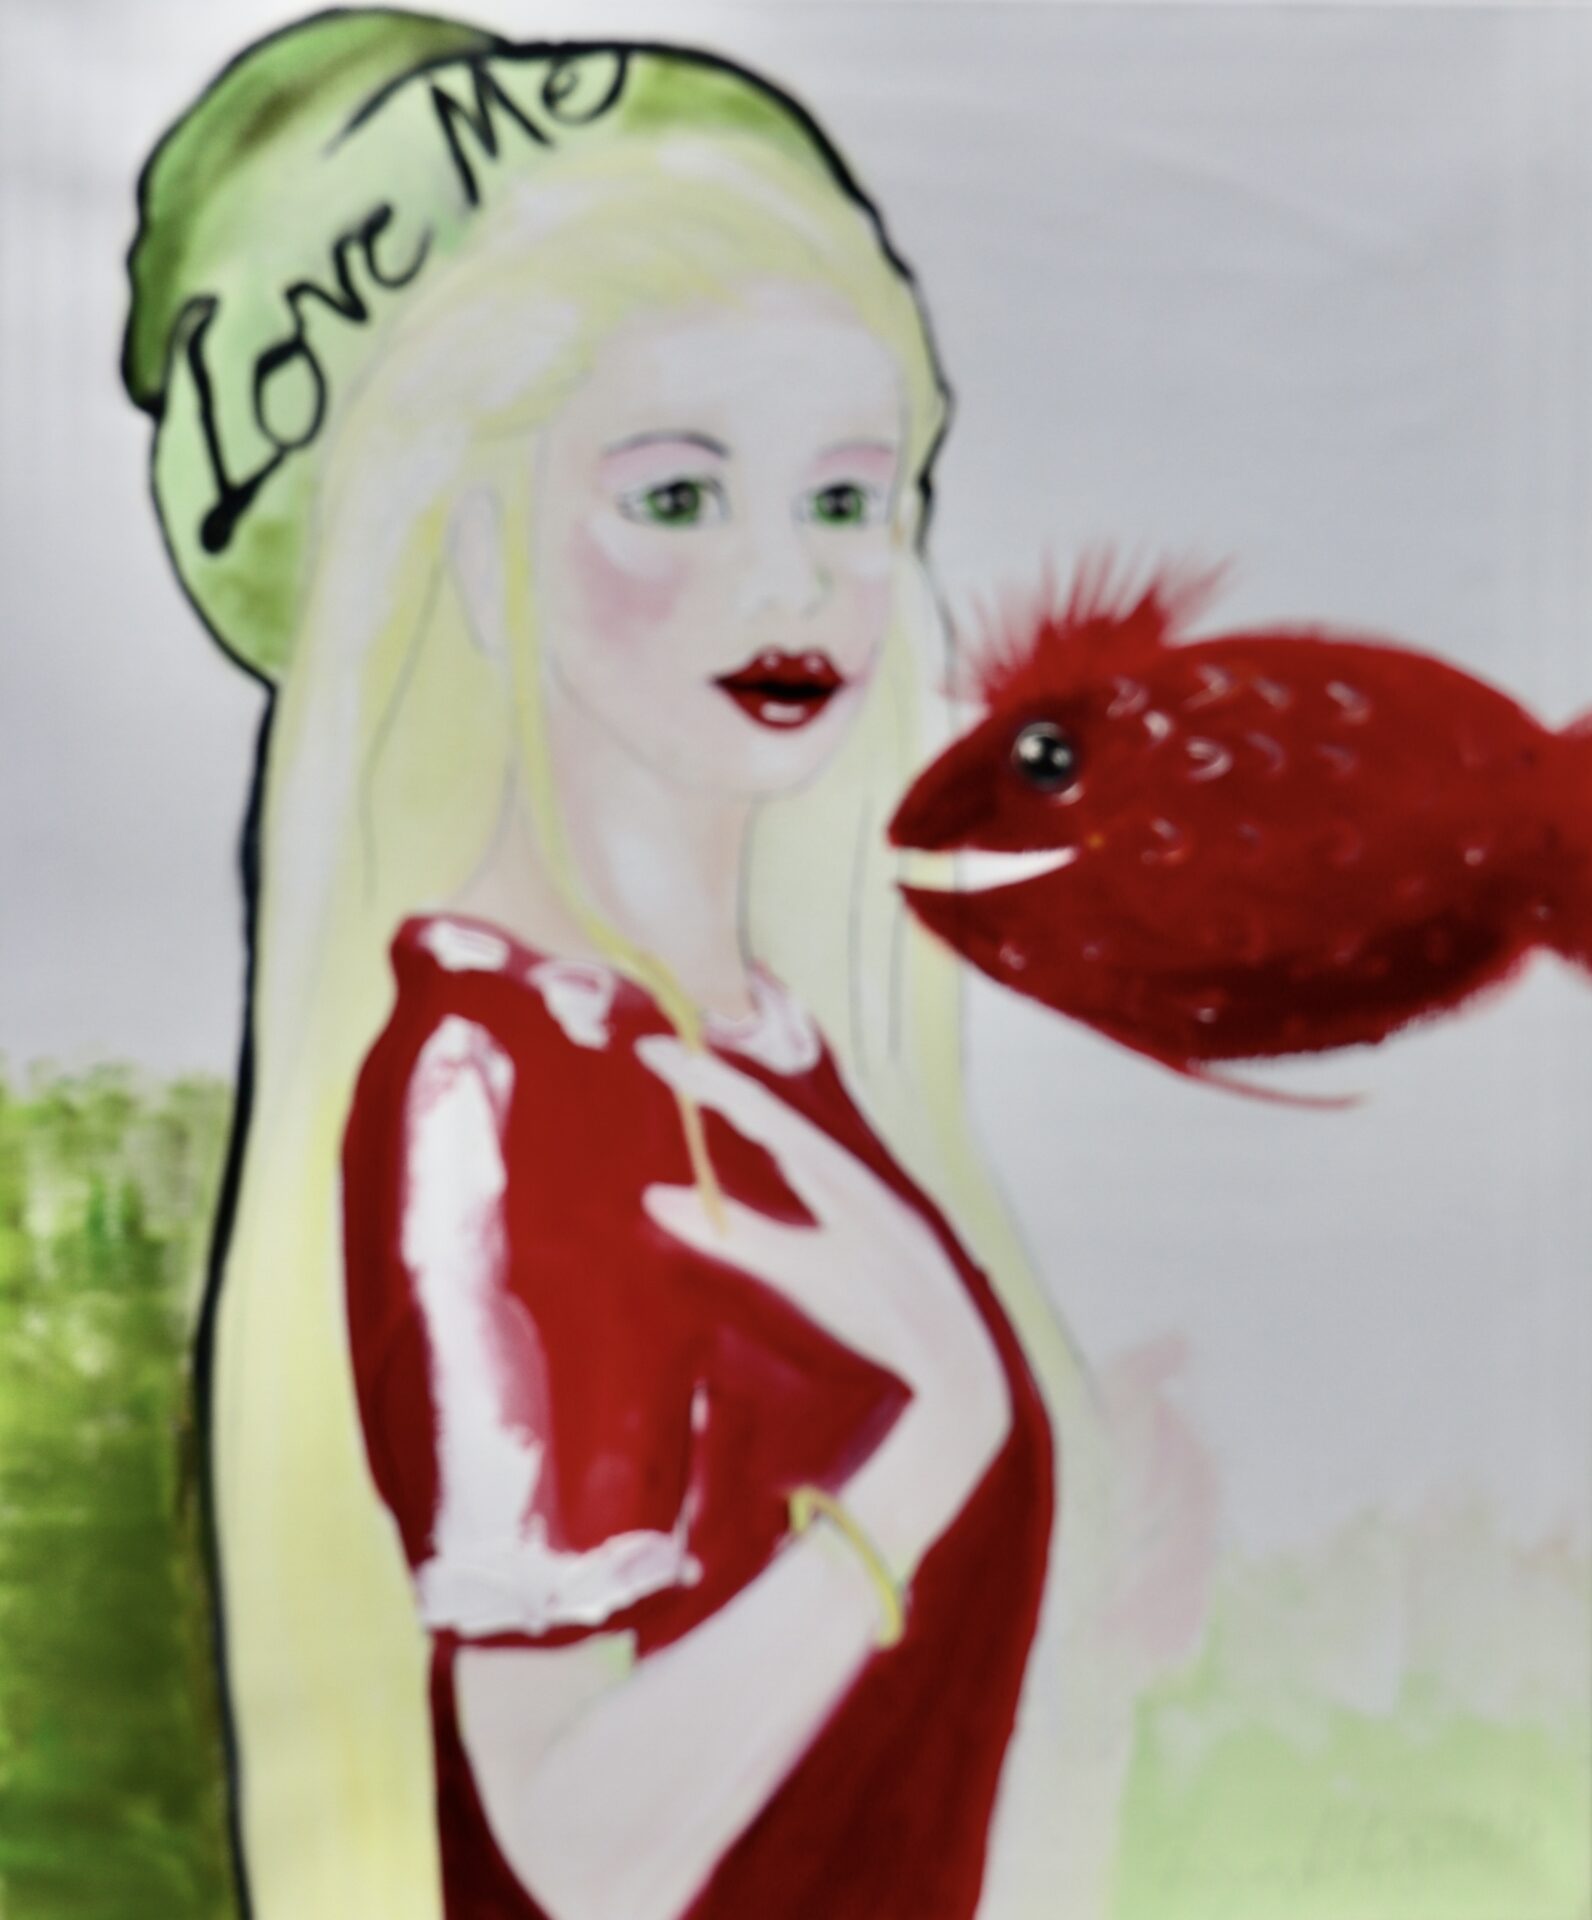 Sehr Exklusives Geburtstagsgeschenk für Familien und Kinder - Kunst kaufen - Tierportrait von Diana Achtzig: „Love Me mit Rotem Fisch“, Ölfarbe auf Leinwand, 60 x 50 cm, Berlin, 2011 bis 2026, Berlin, 350 €.